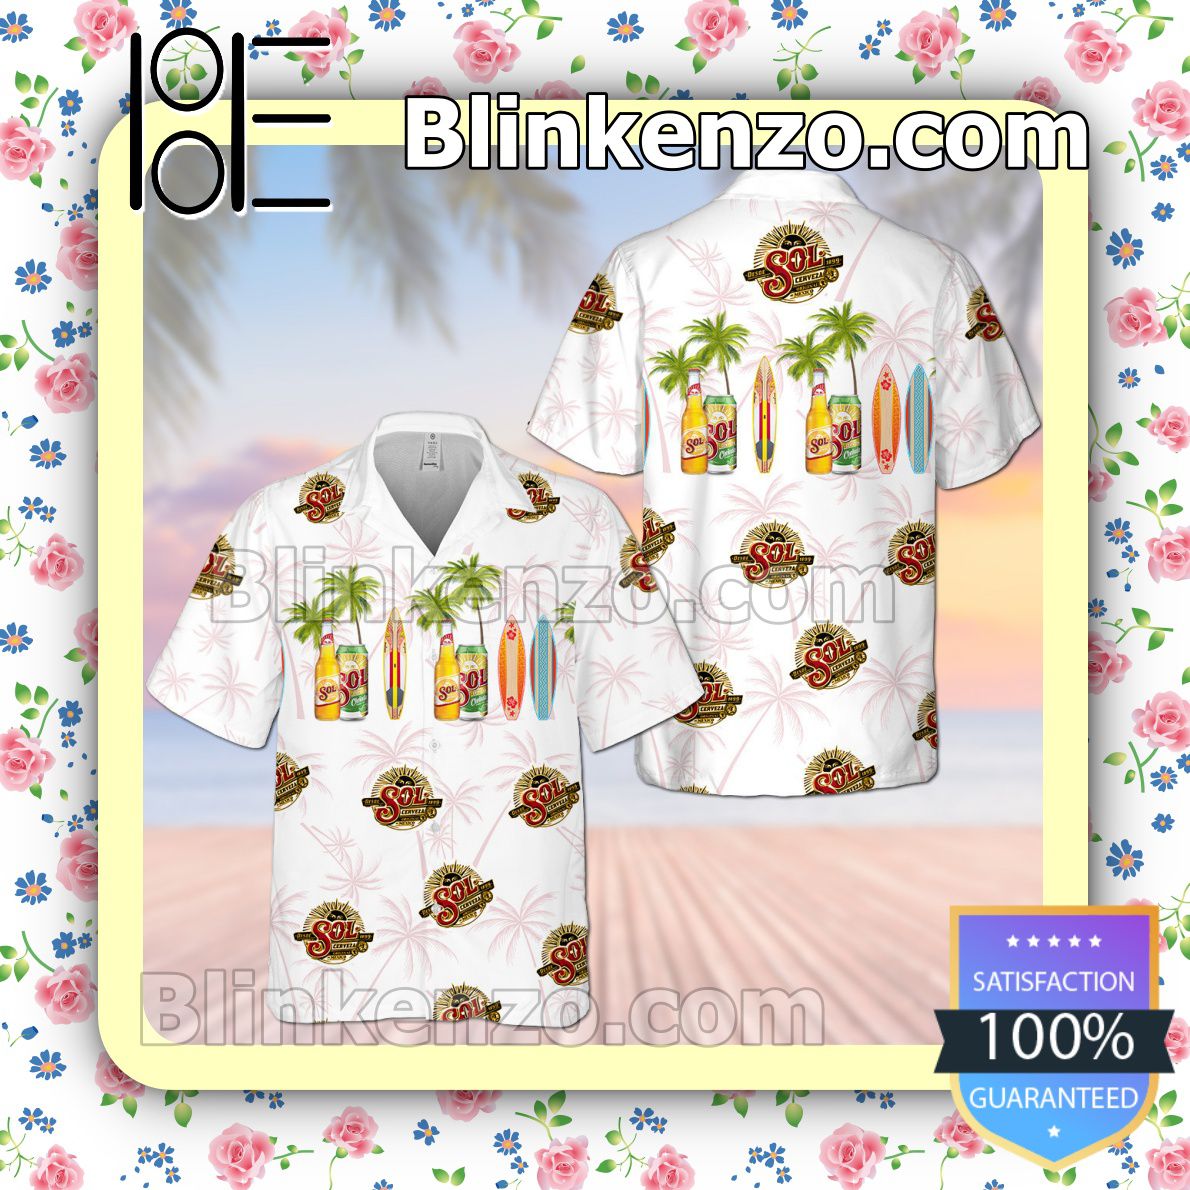 Sol Beer Palm Tree White Summer Hawaiian Shirt, Mens Shorts